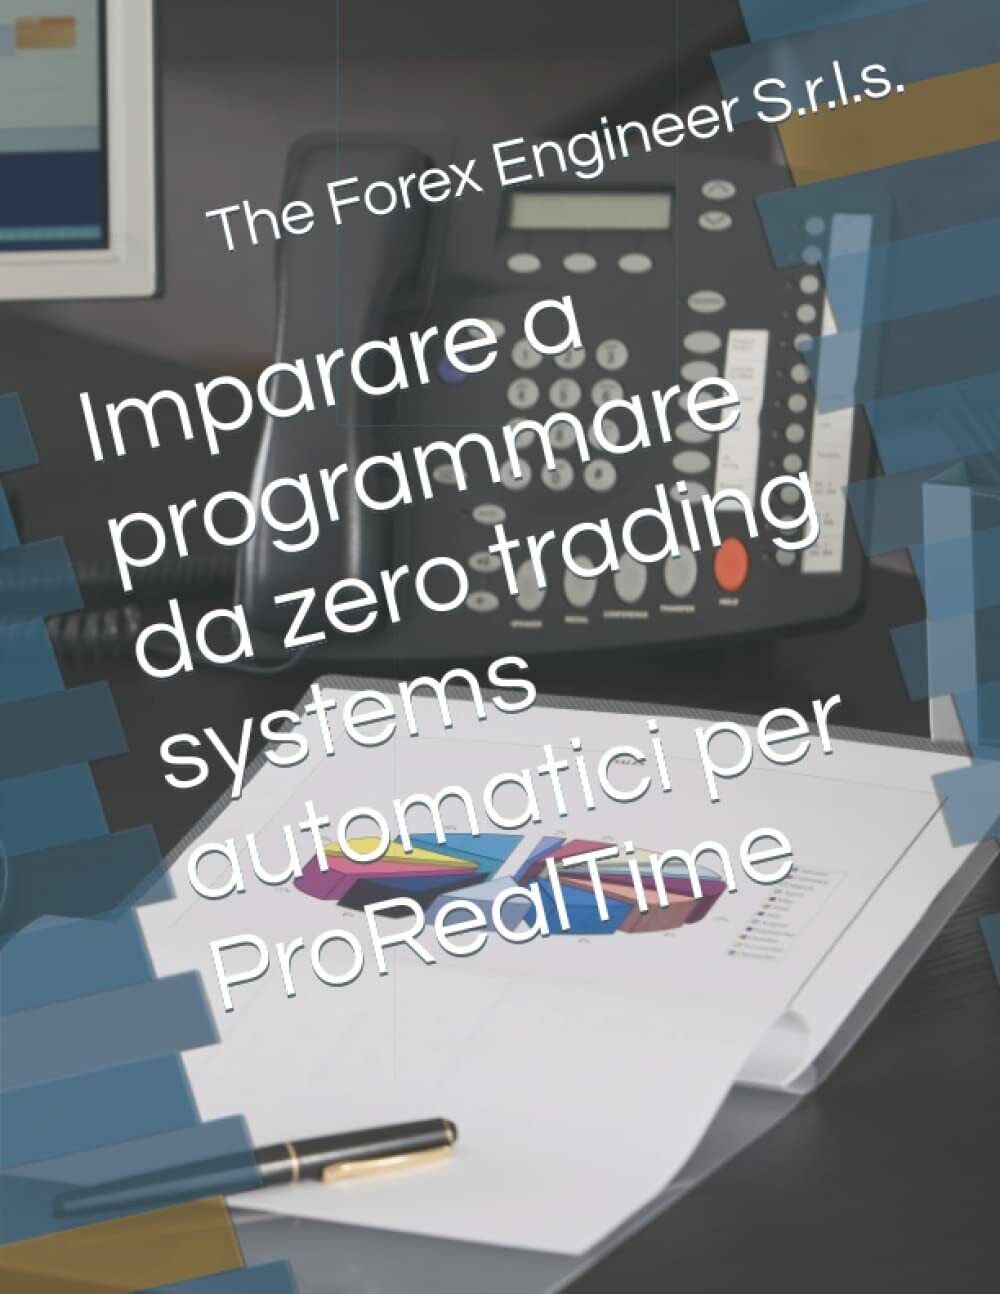 Imparare a programmare da zero trading systems automatici per ProRealTime di The